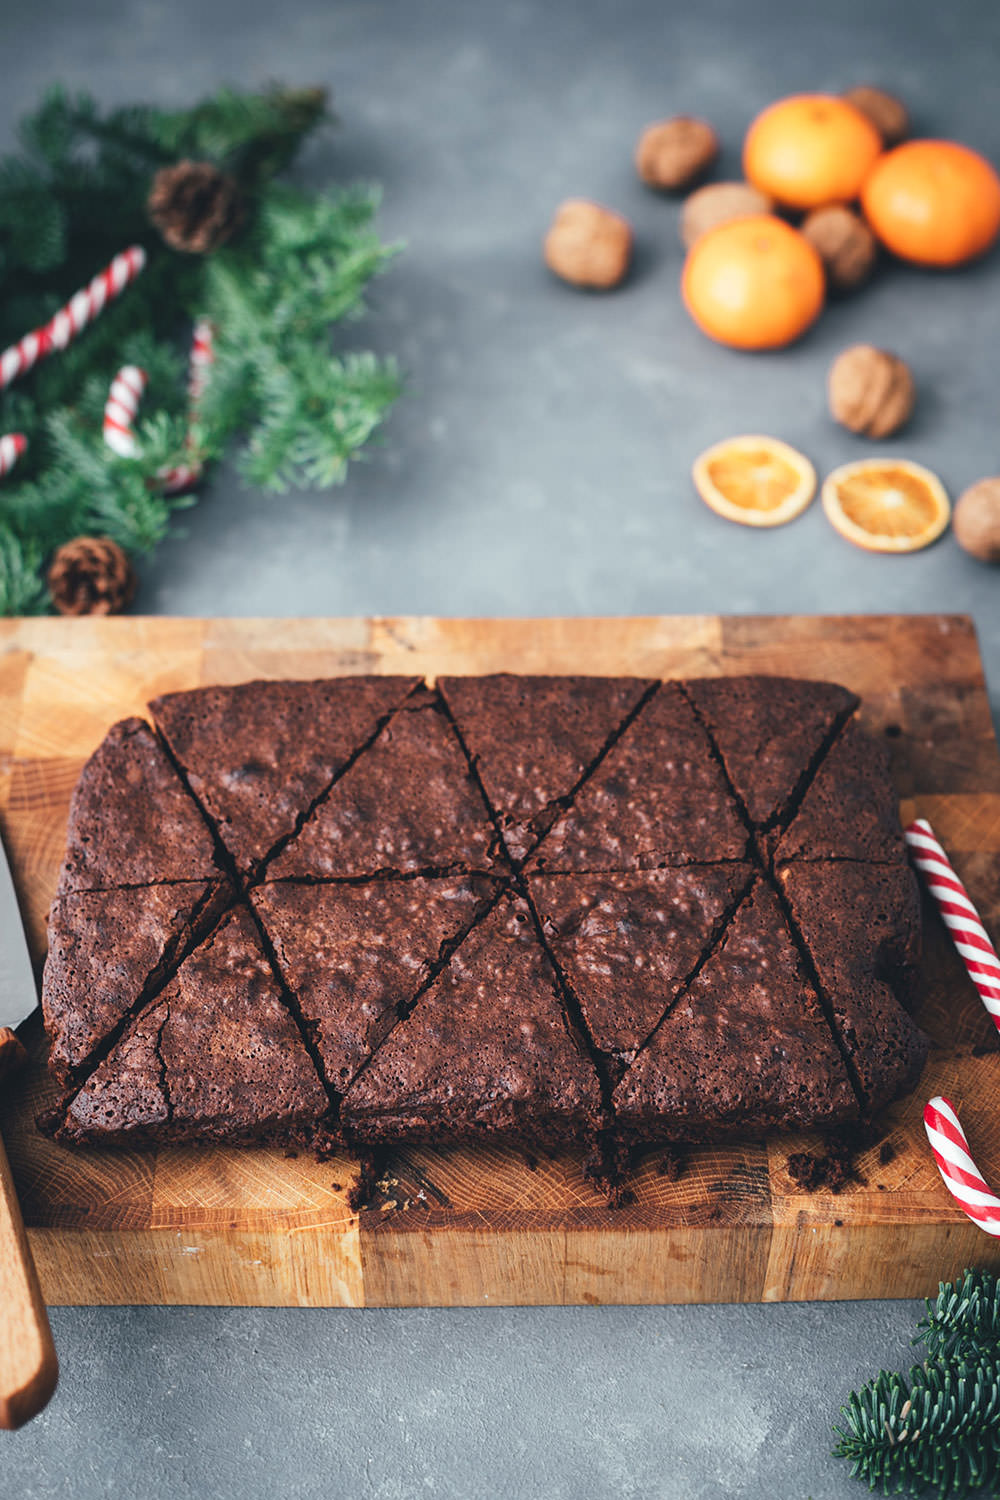 Rezept für Weihnachtsbaum-Brownies – das sind einfache Brownies in Tannenbaum-Form, die mit Zuckerstangen, Zuckerguss und bunten Perlen verziert werden. Ein Spaß für die ganze Familie und das perfekte Gebäck für die Advents- und Weihnachtszeit!